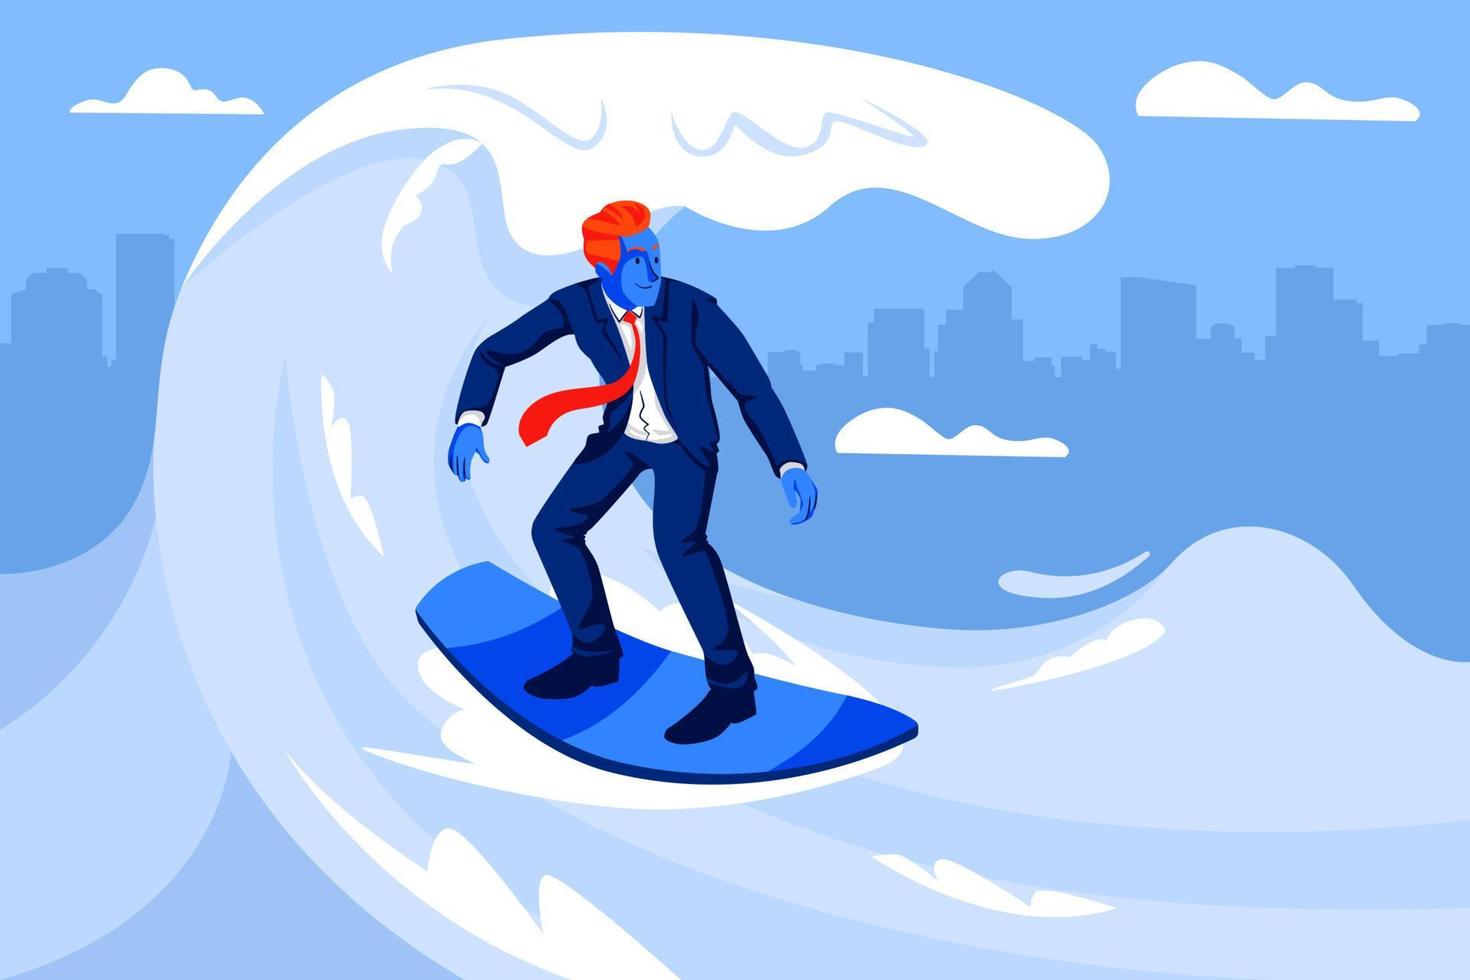 zakenman surfen op de golf. bedrijfsconcept illustratie vector